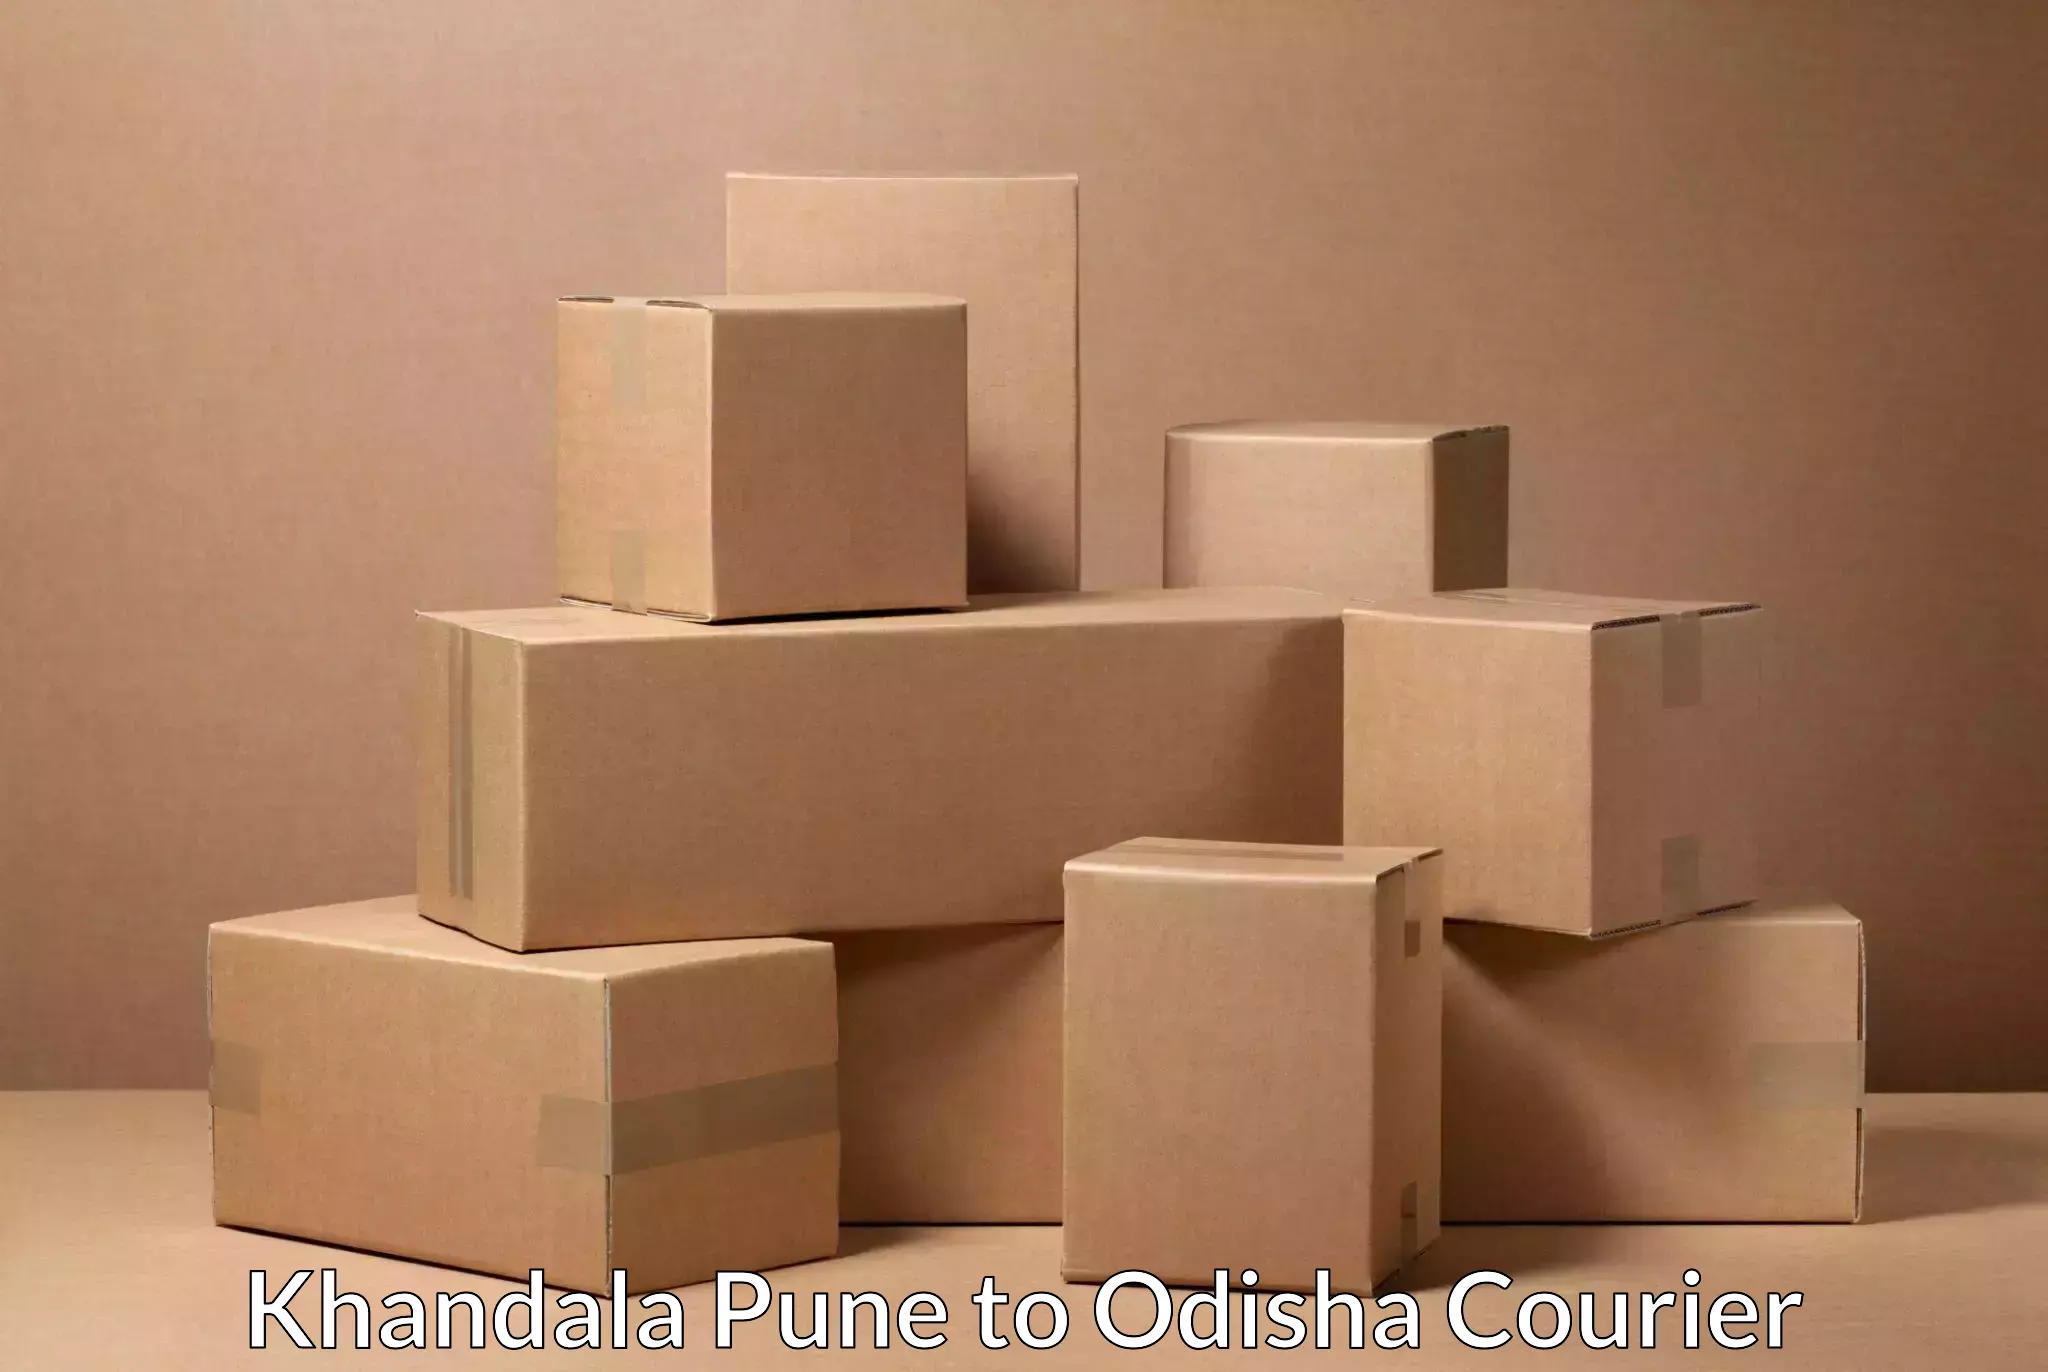 Efficient shipping operations Khandala Pune to Ukhunda